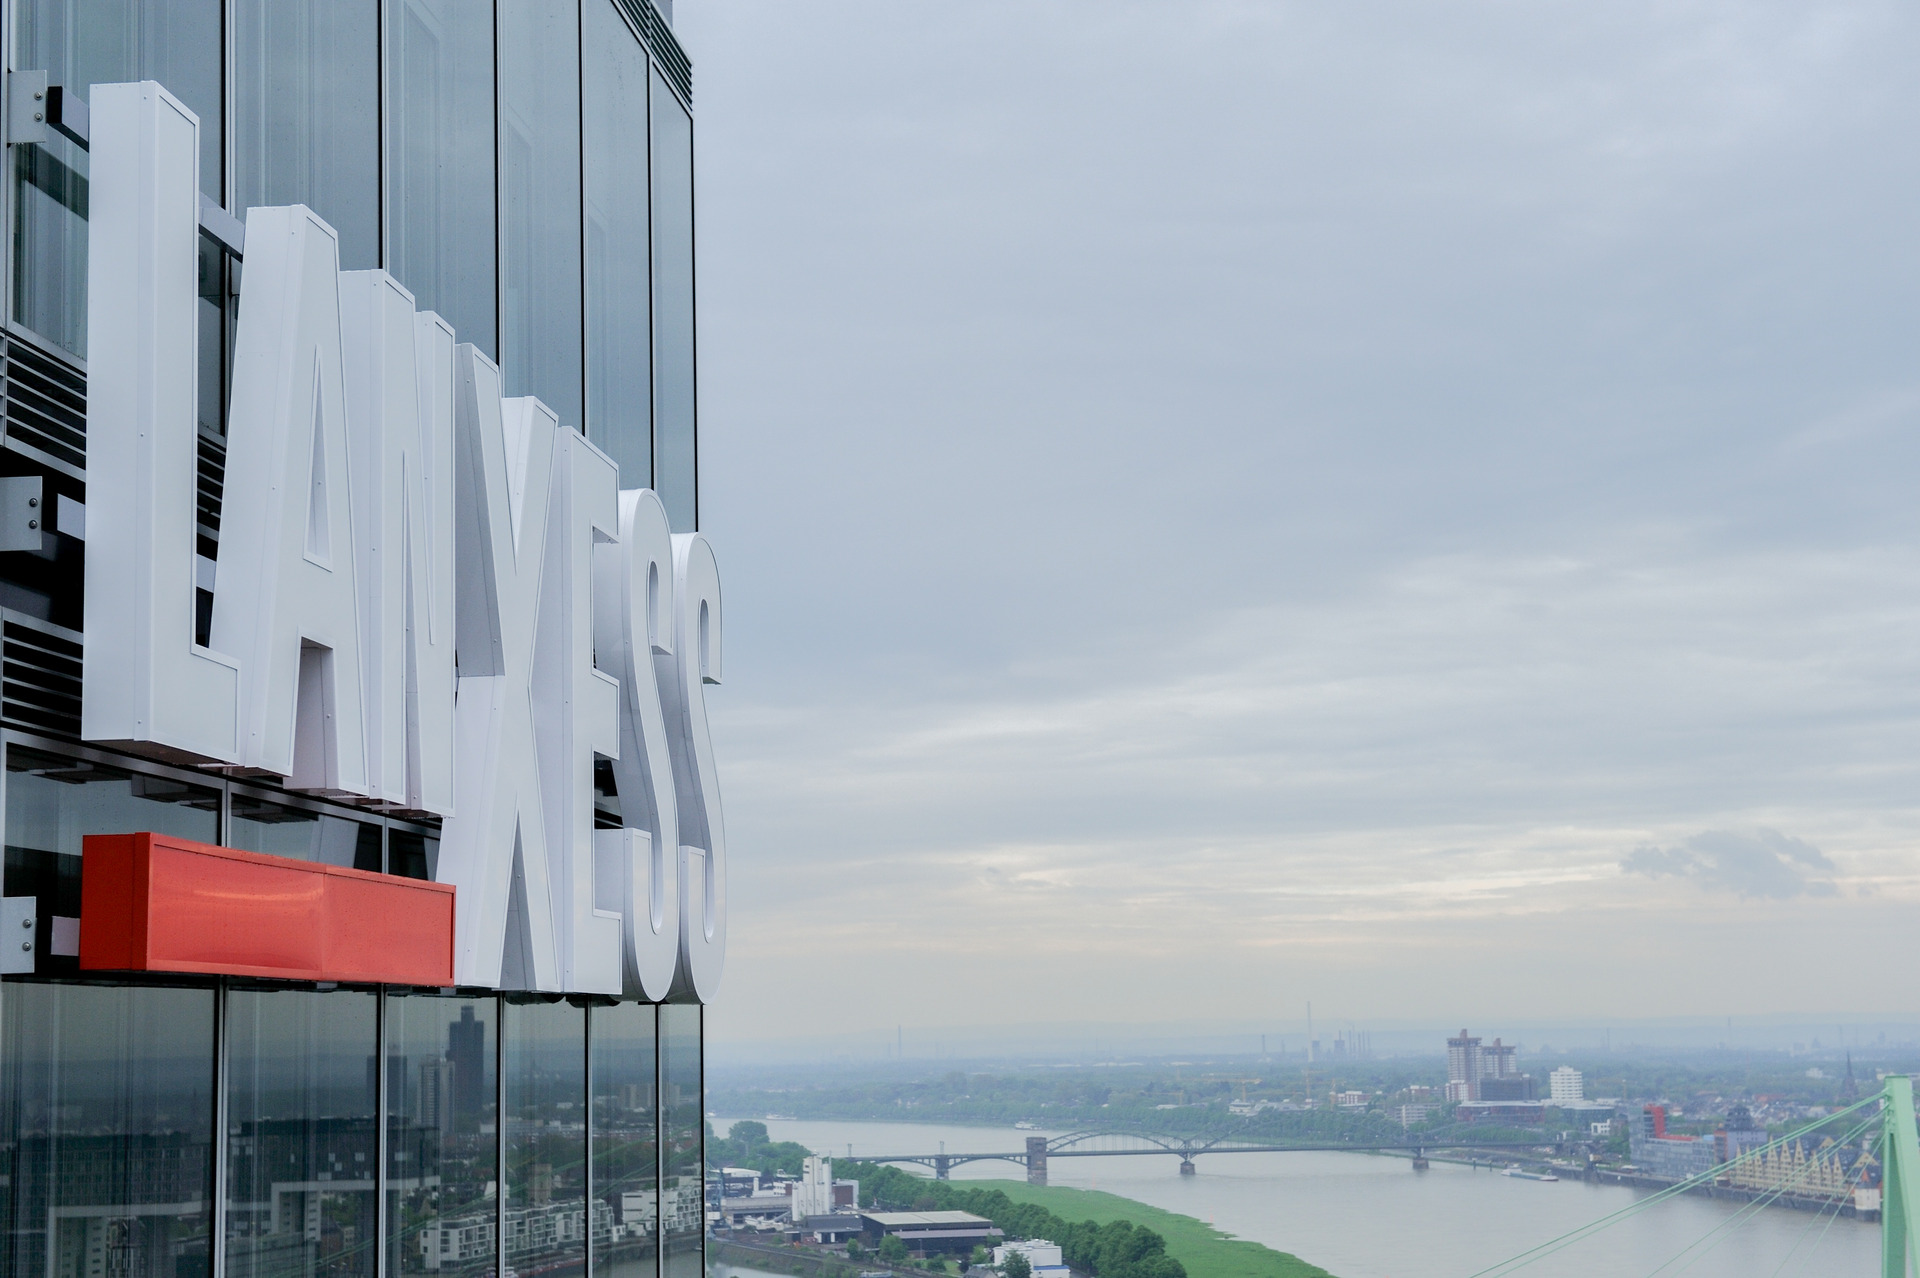 Seit dem 1. August 2013 steuert der Spezialchemie-Konzern LANXESS offiziell seine weltweiten Geschäfte vom Kölner LANXESS Tower aus.